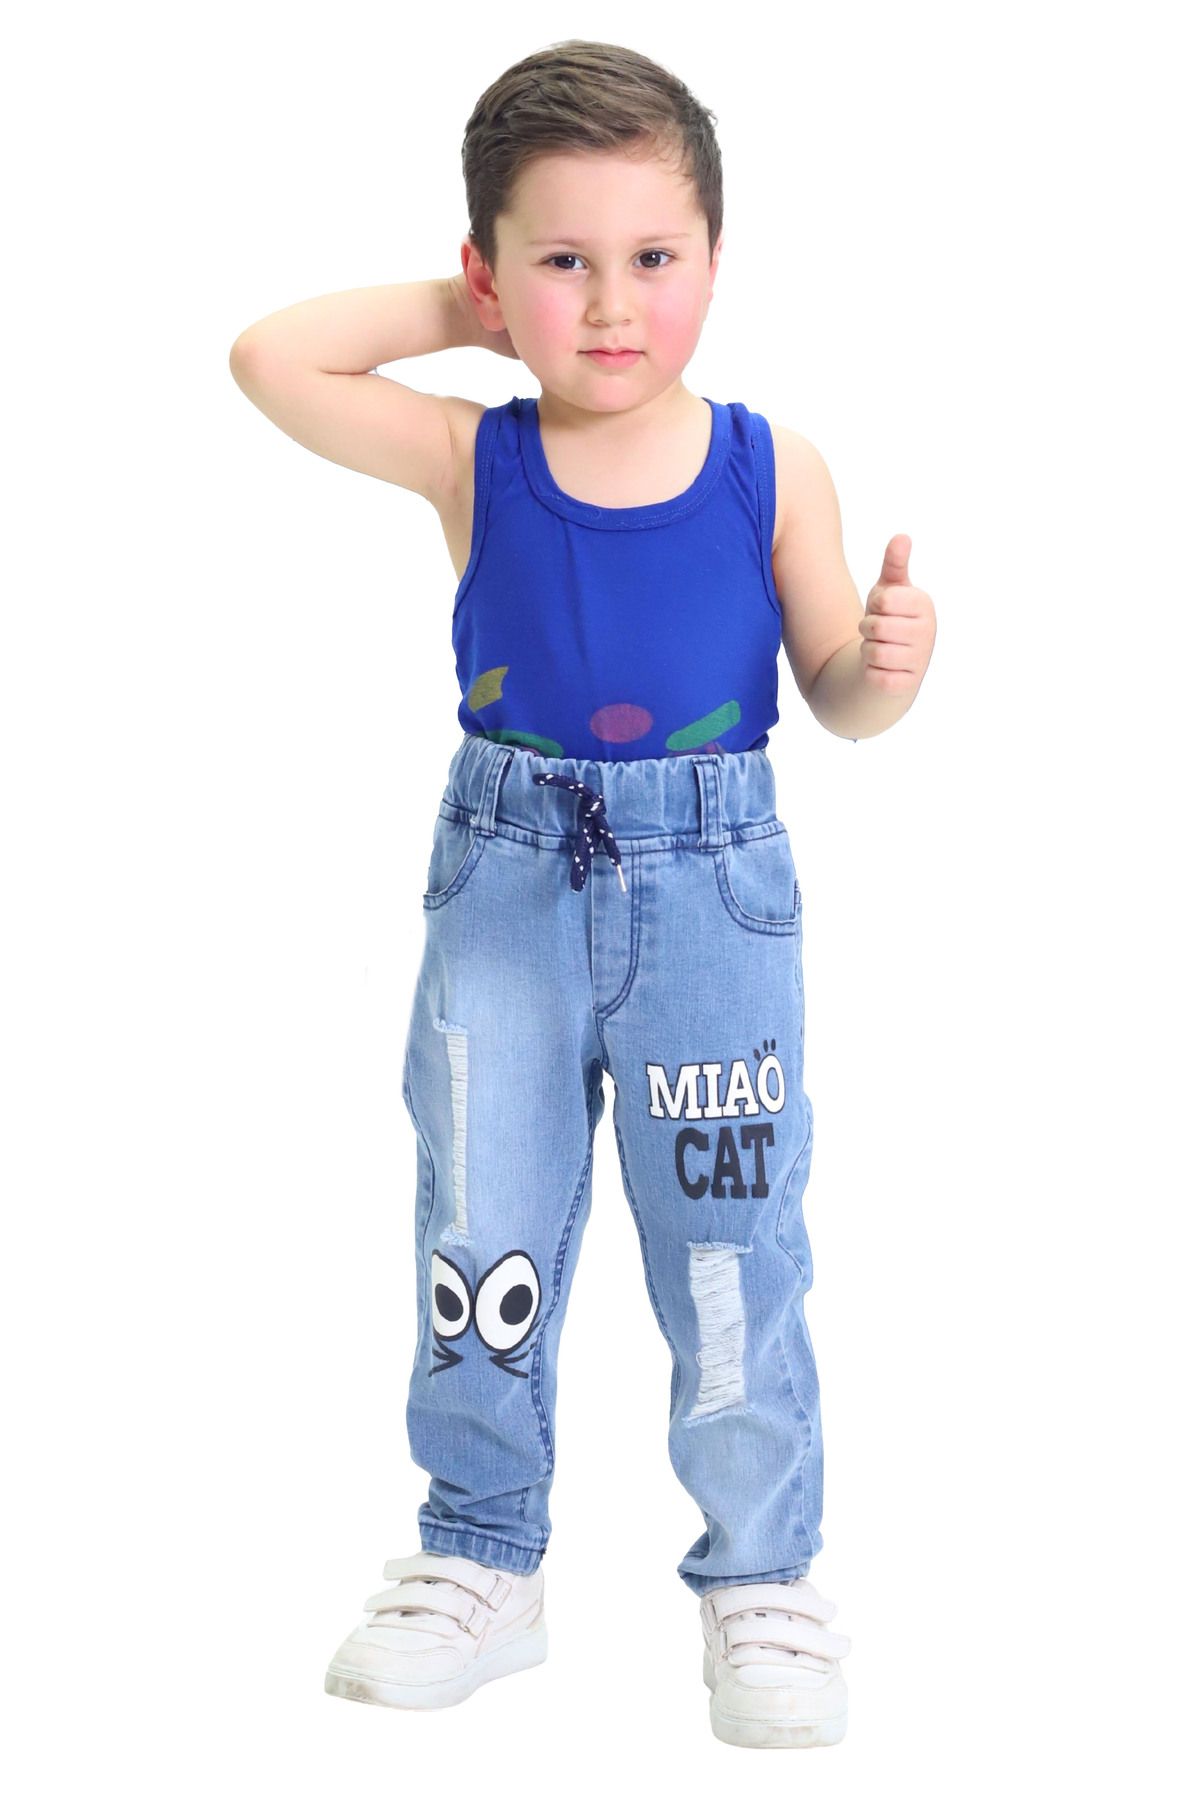 GZT TEKSTİL Erkek Çocuk Likralı Pamuk Kumaş Baskılı Model Kot Pantolon (1-4 YAŞ)